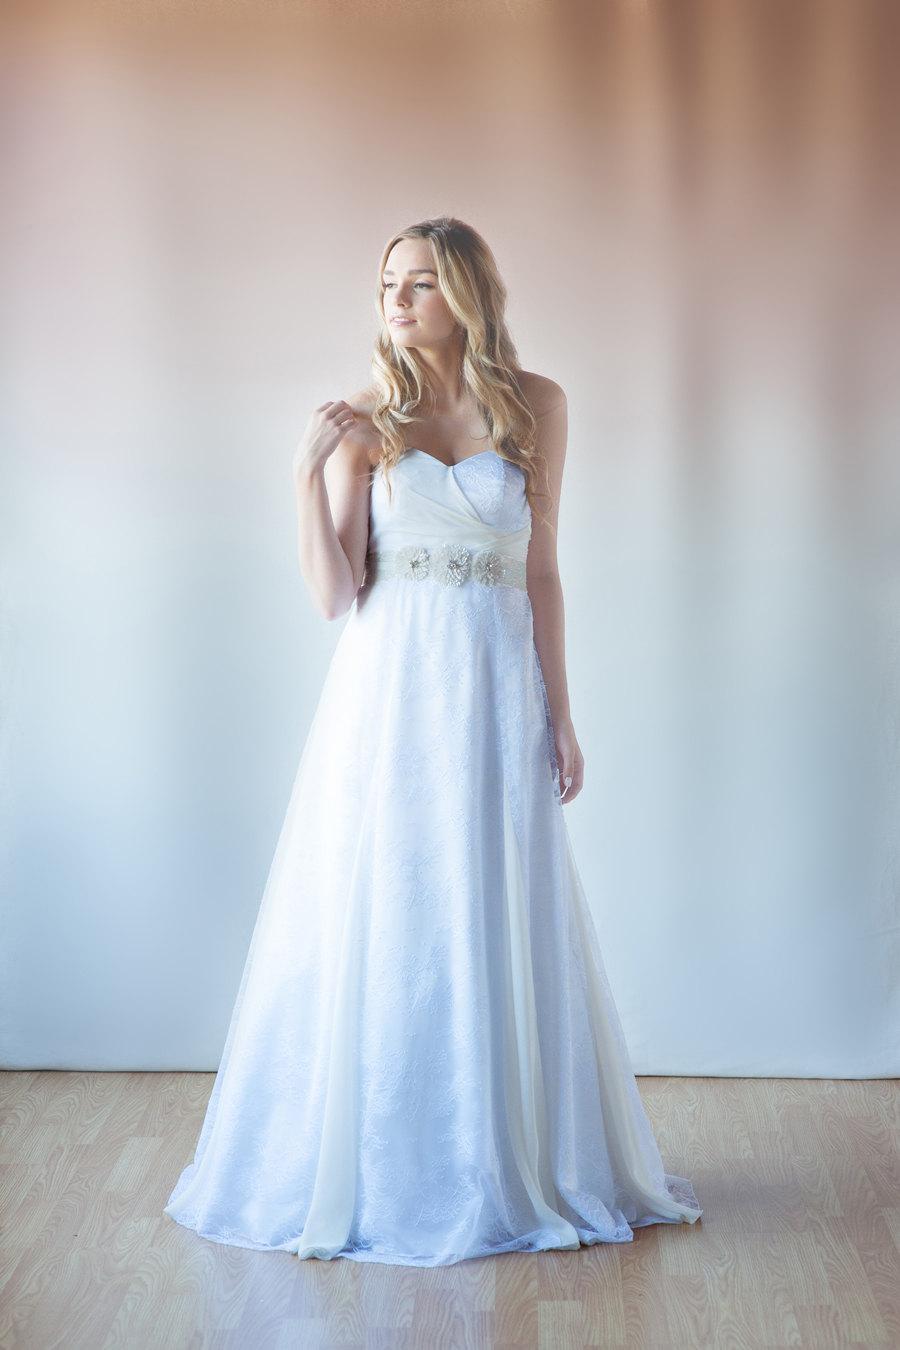 Mariage - French lace bridal dress, beach wedding dress, wedding gowns, white chiffon, for dreamy beach destination weddings